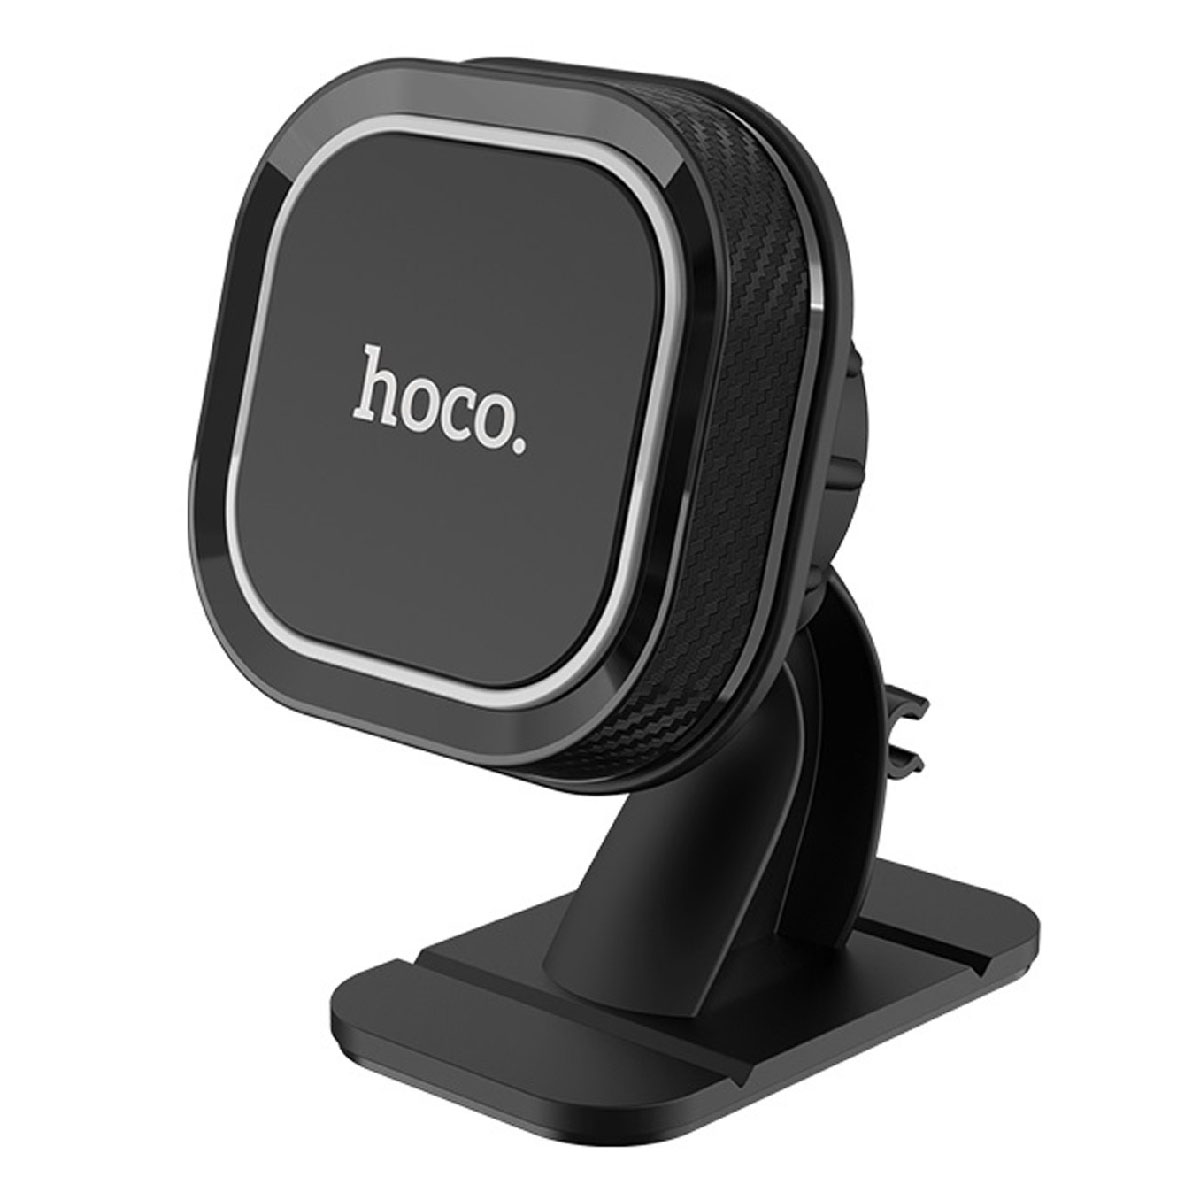 HOCO CA53 Intelligent автомобильный магнитный держатель телефона для приборной панели, цвет черный.